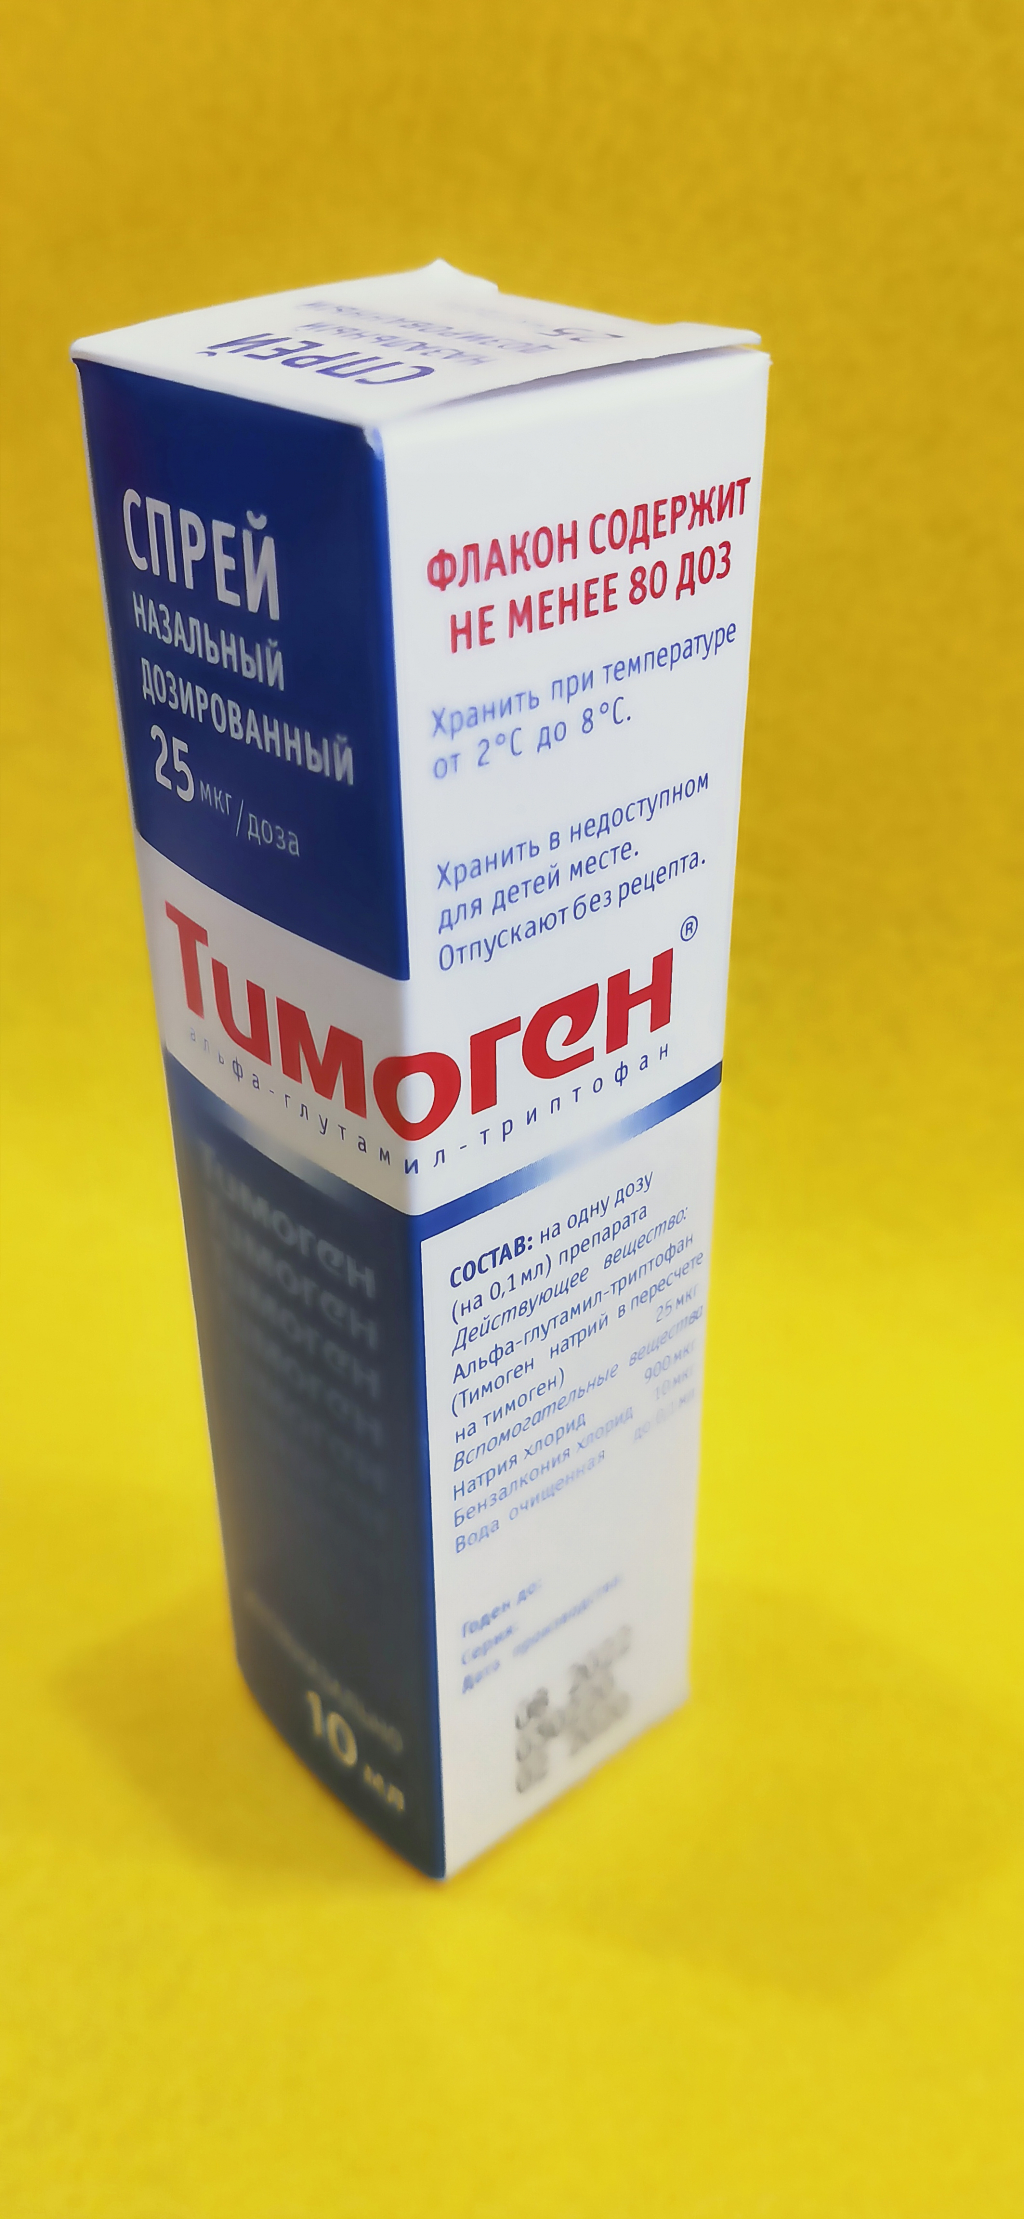 Тимоген - Для деток, которые часто болеют.